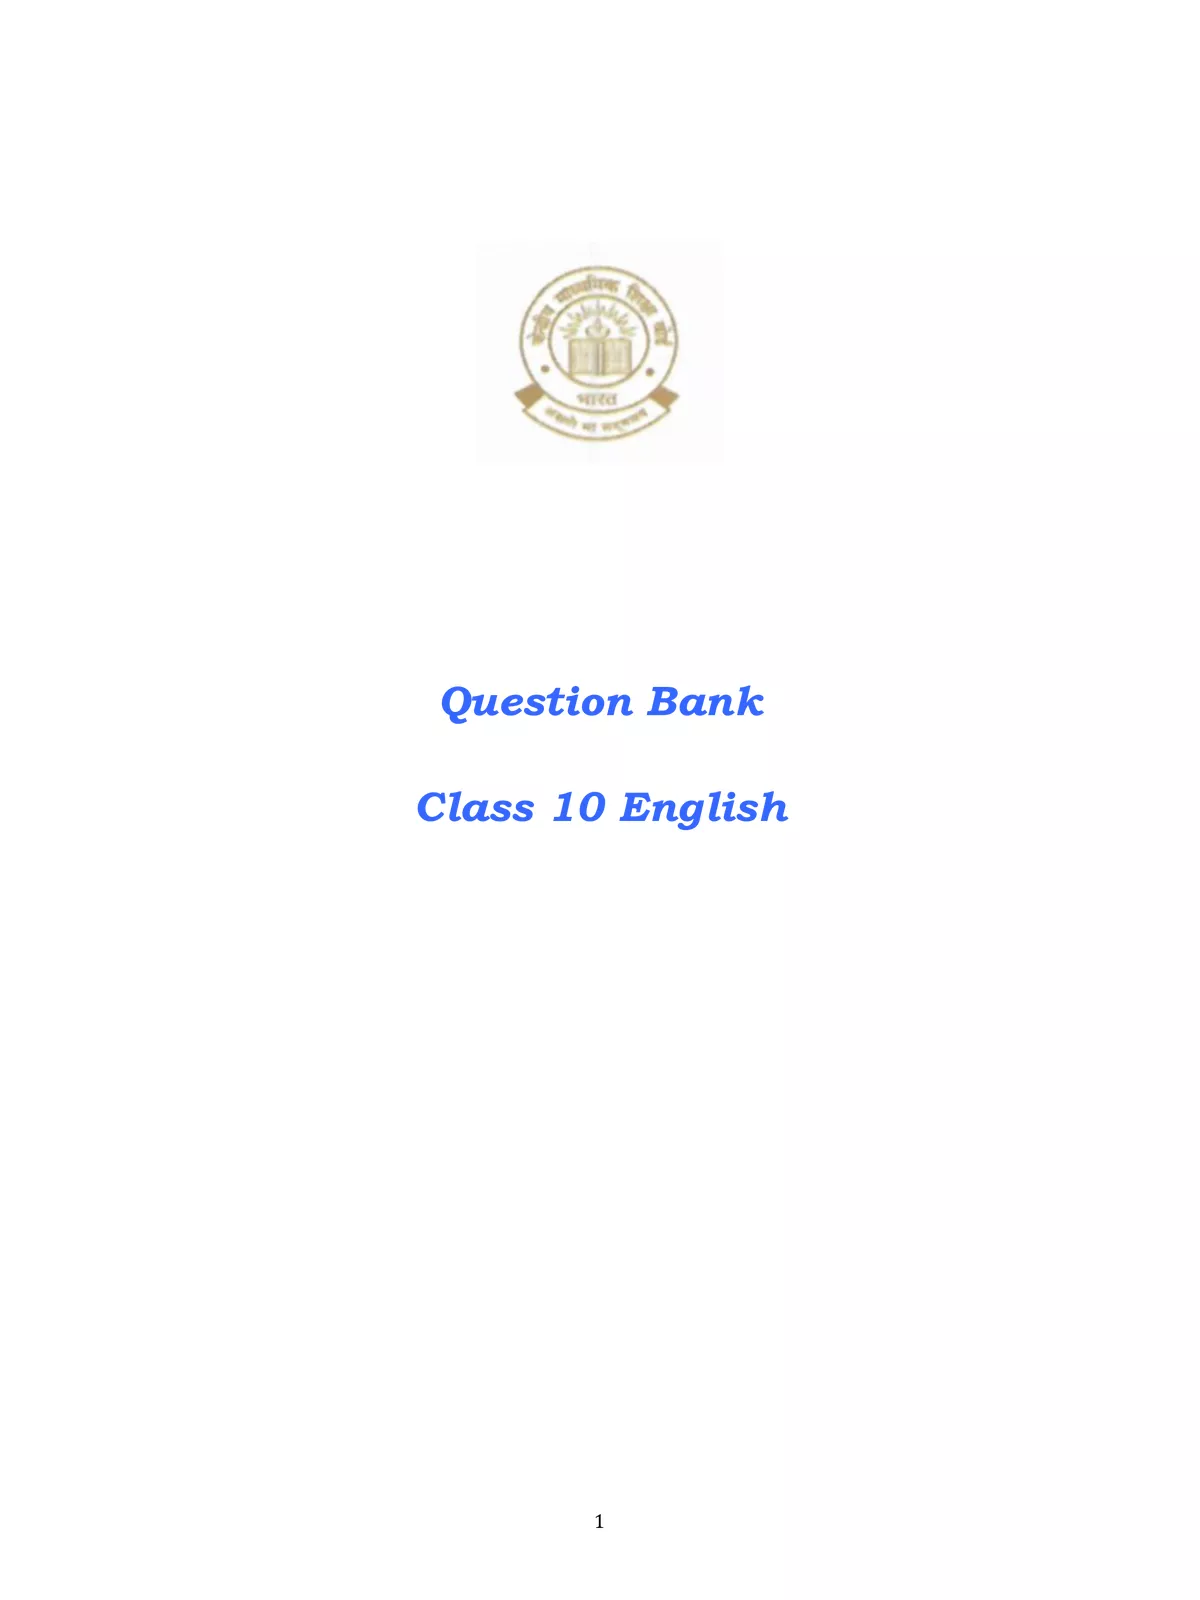 CBSE Class 10 Board Exam Question Bank 2021